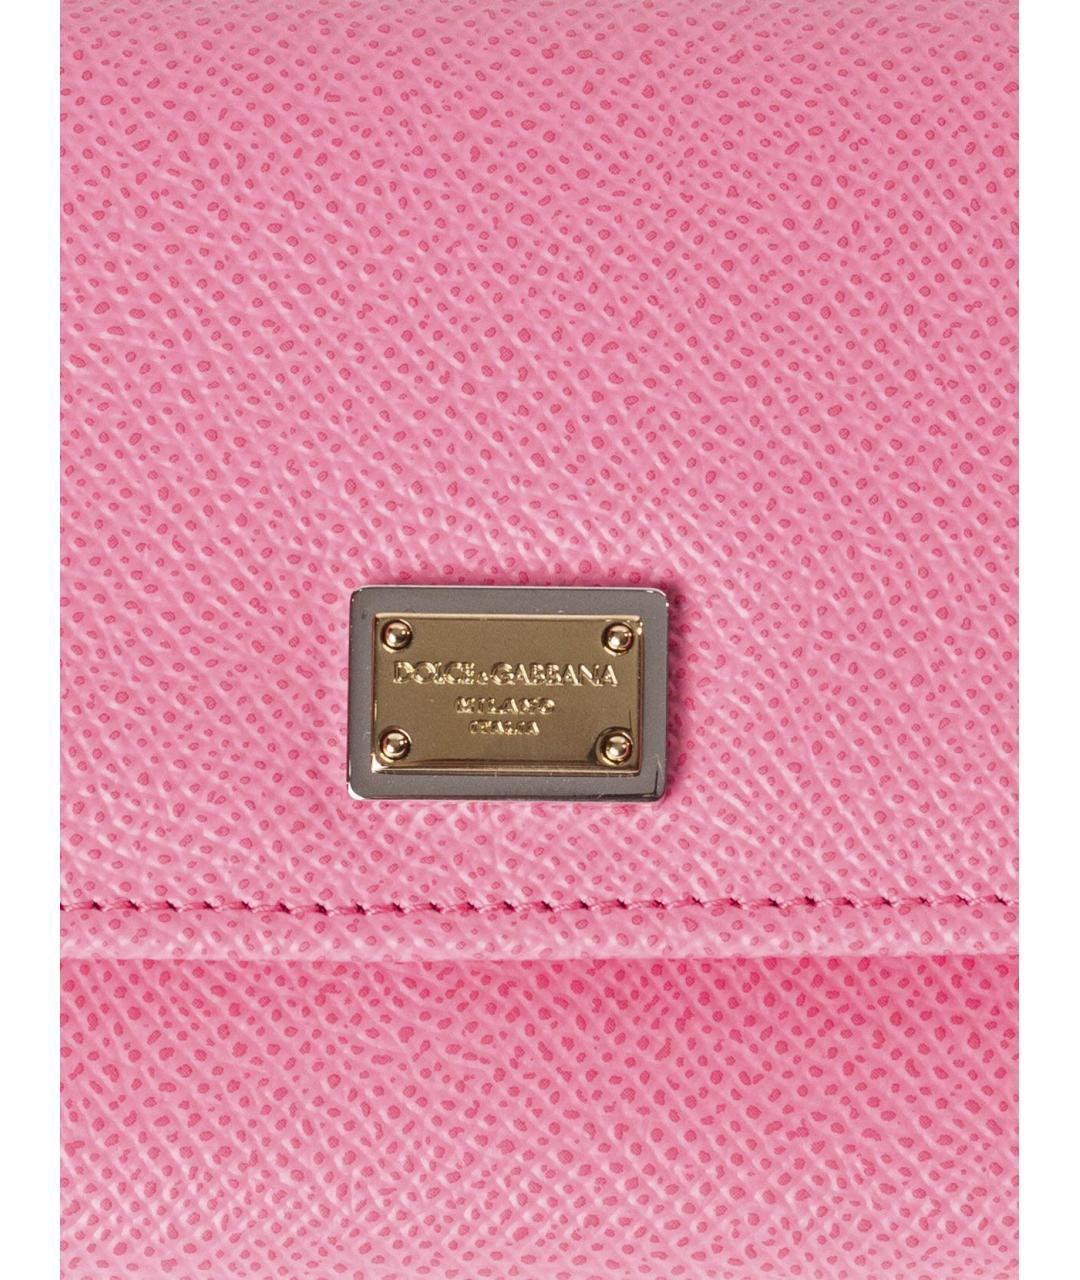 DOLCE&GABBANA Розовый кожаный кошелек, фото 4